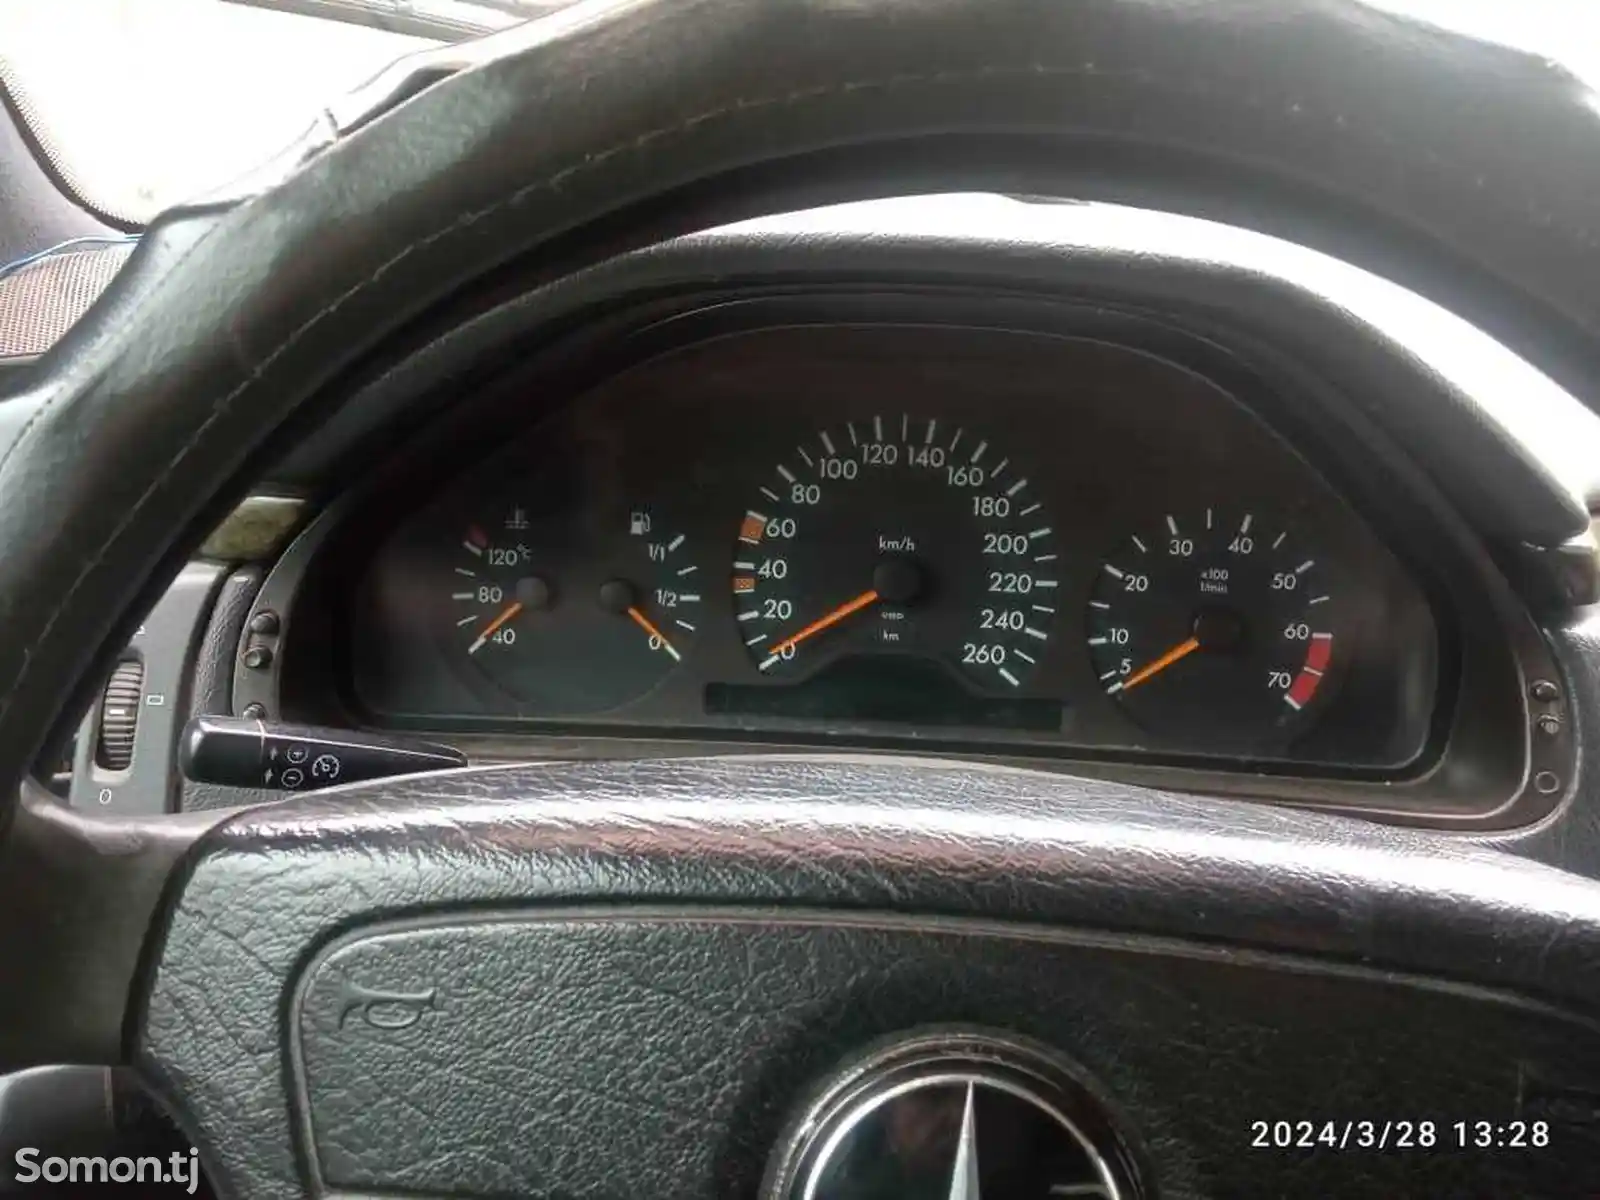 Mercedes-Benz E class, 1998-11